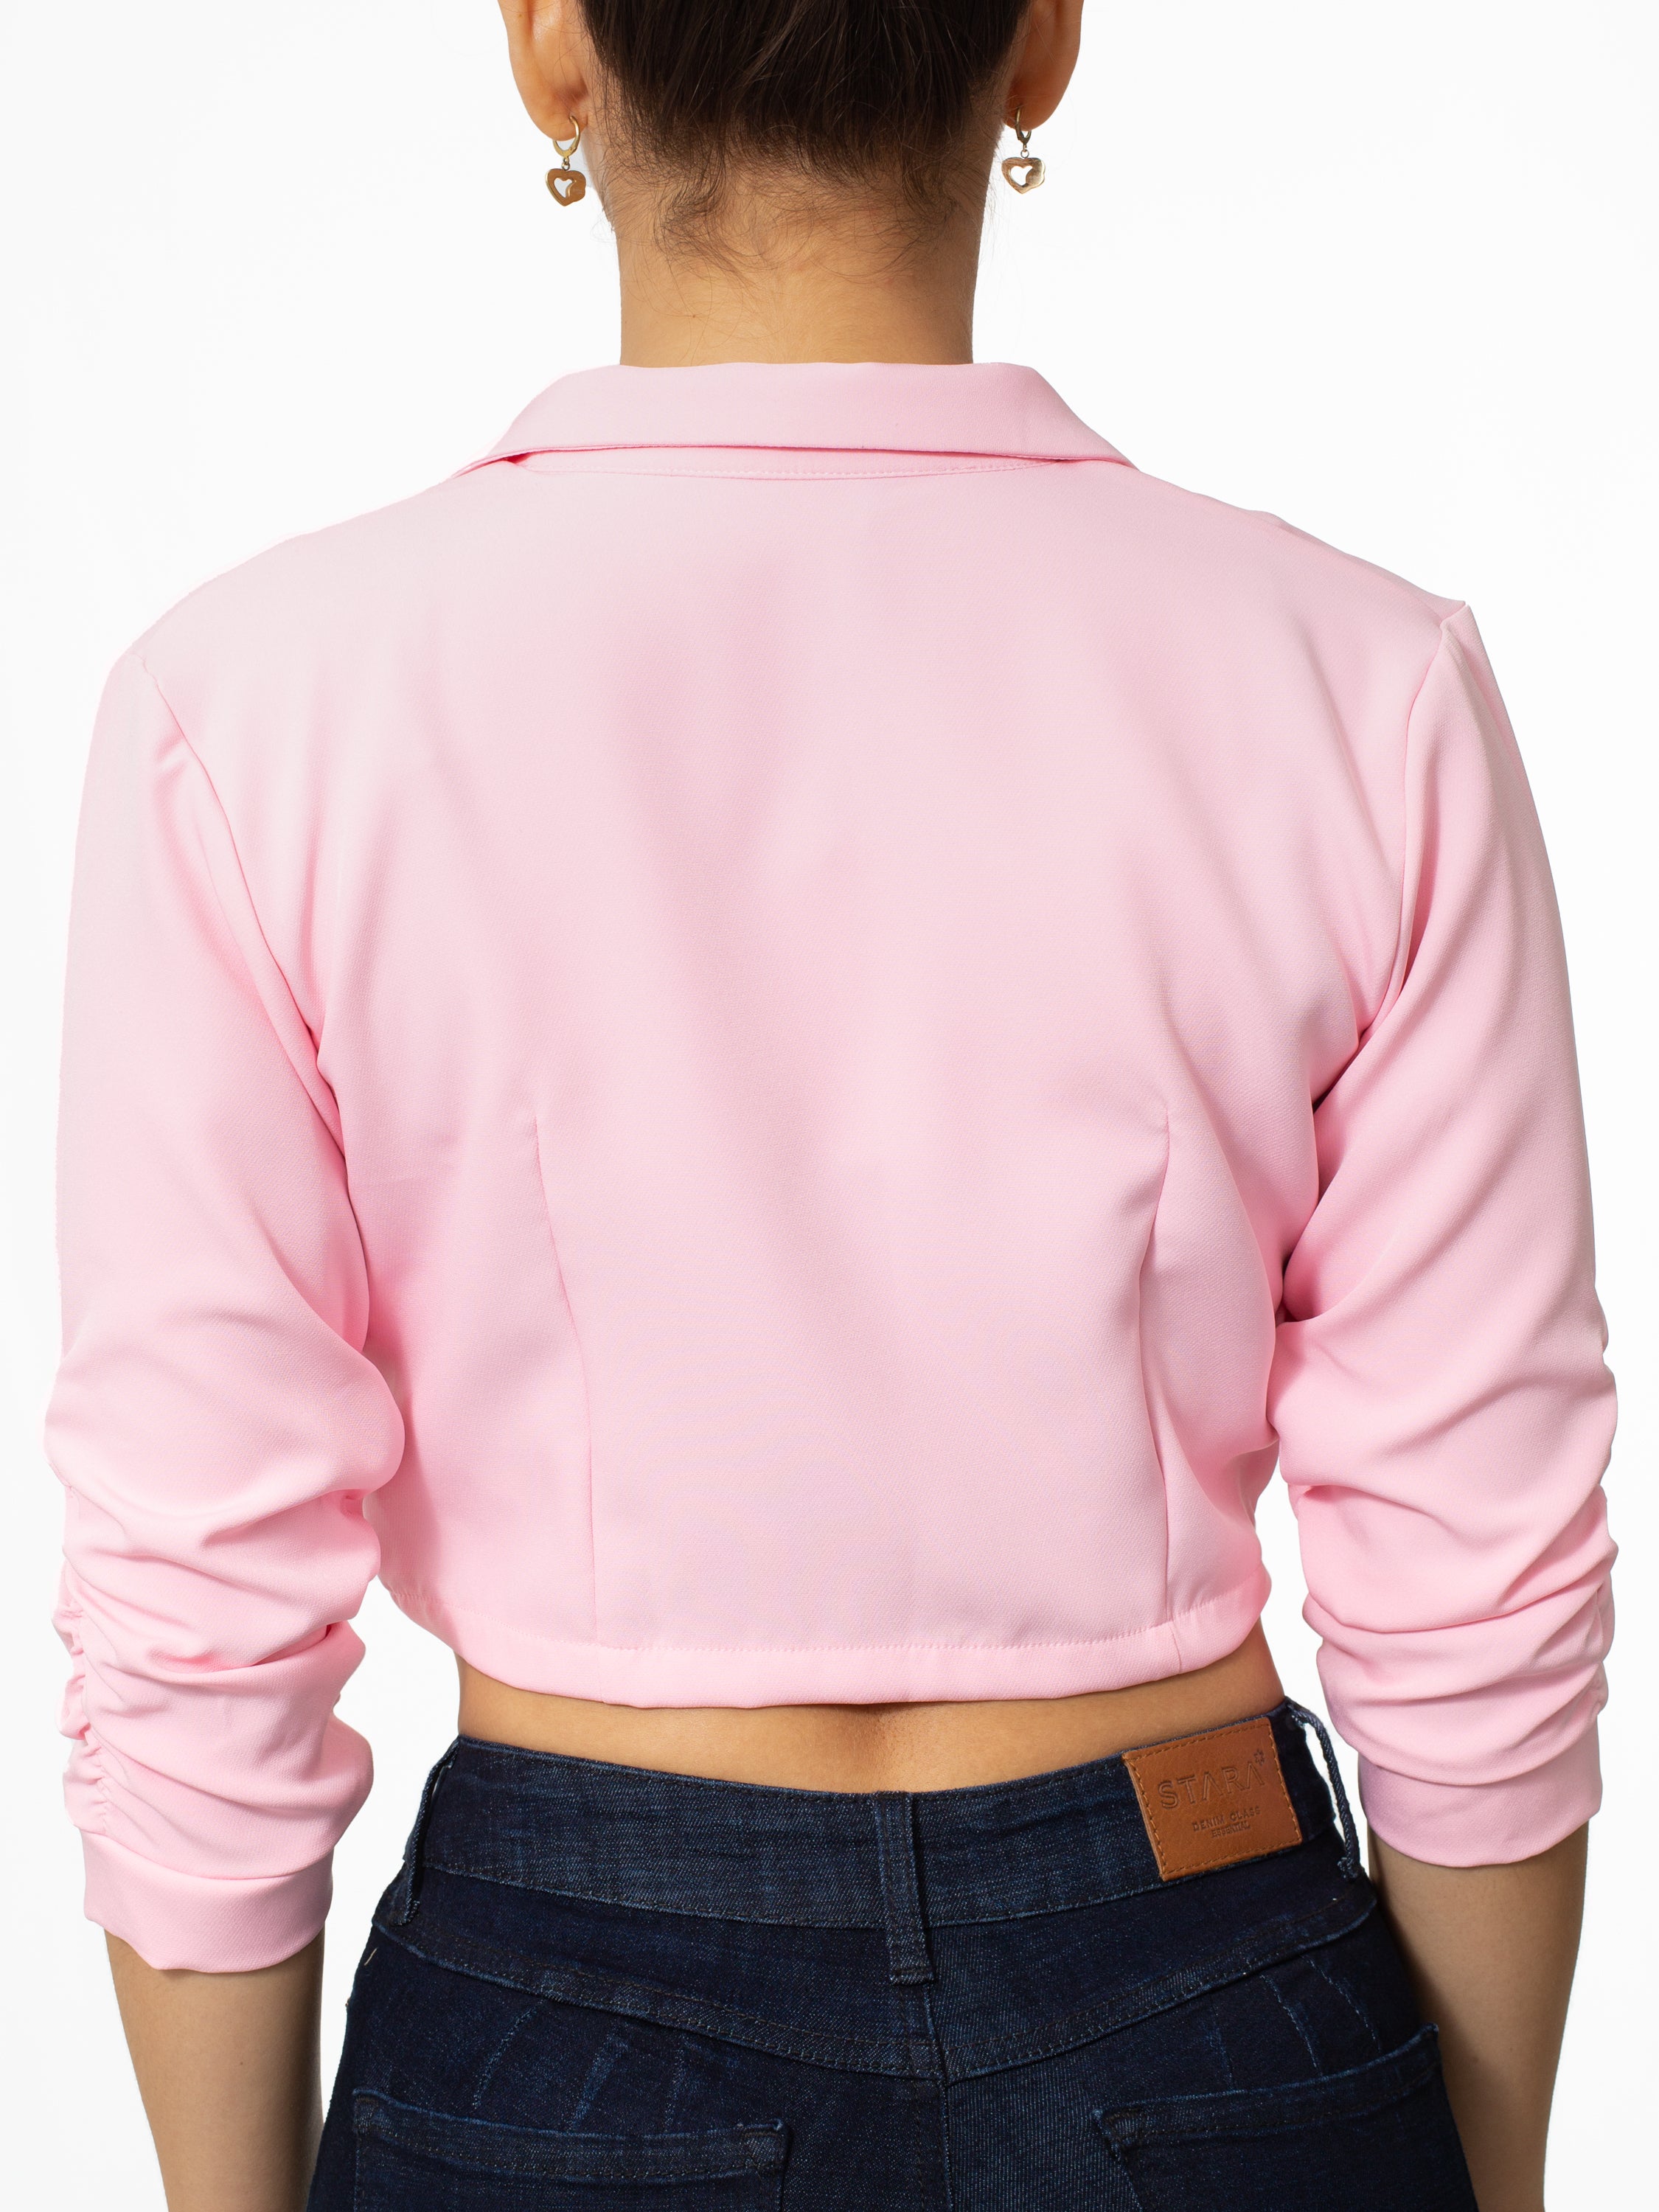 Blazer corto rosado con detalle en mangas